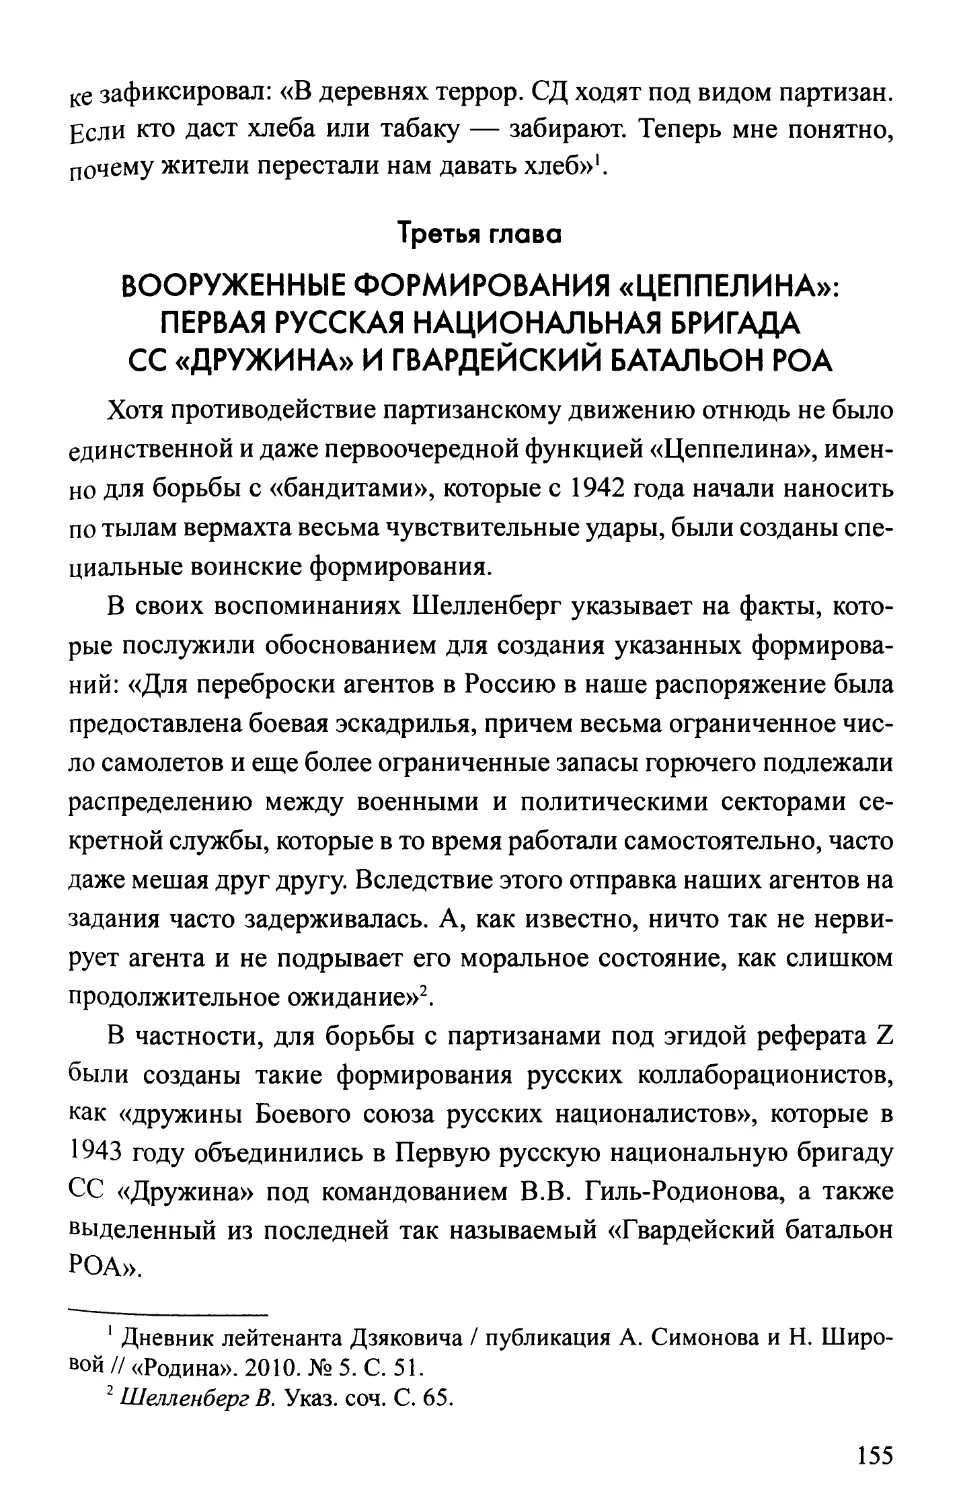 Третья  глава. Вооруженные  формирования  «Цеппелина»: Первая  русская  национальная  бригада  СС  «Дружина»  и Гвардейский  батальон  РОА